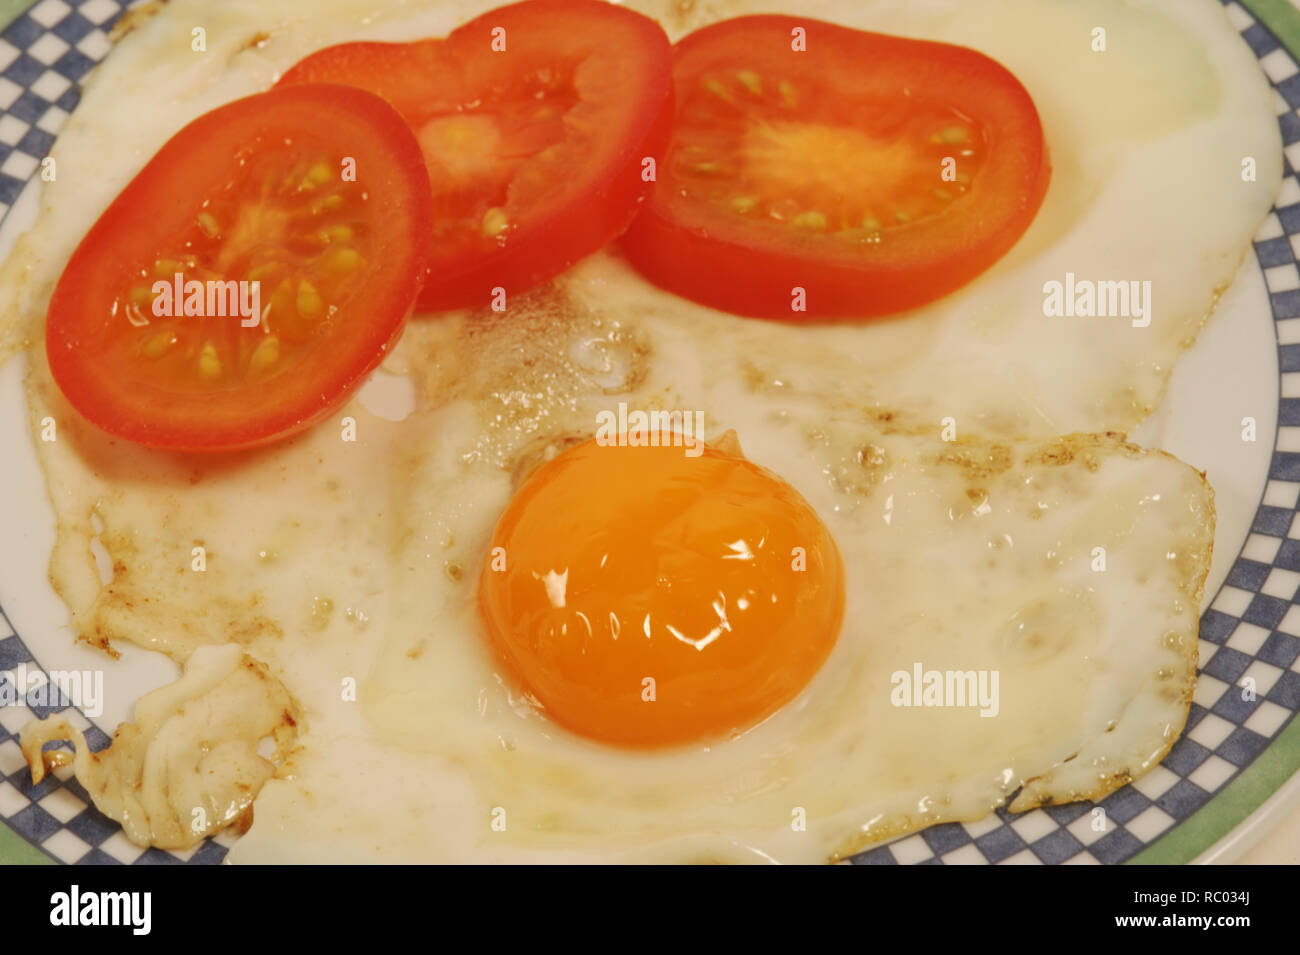 Spiegelei mit frischen Tomaten | Fried egg with fresh tomatoes Stock Photo